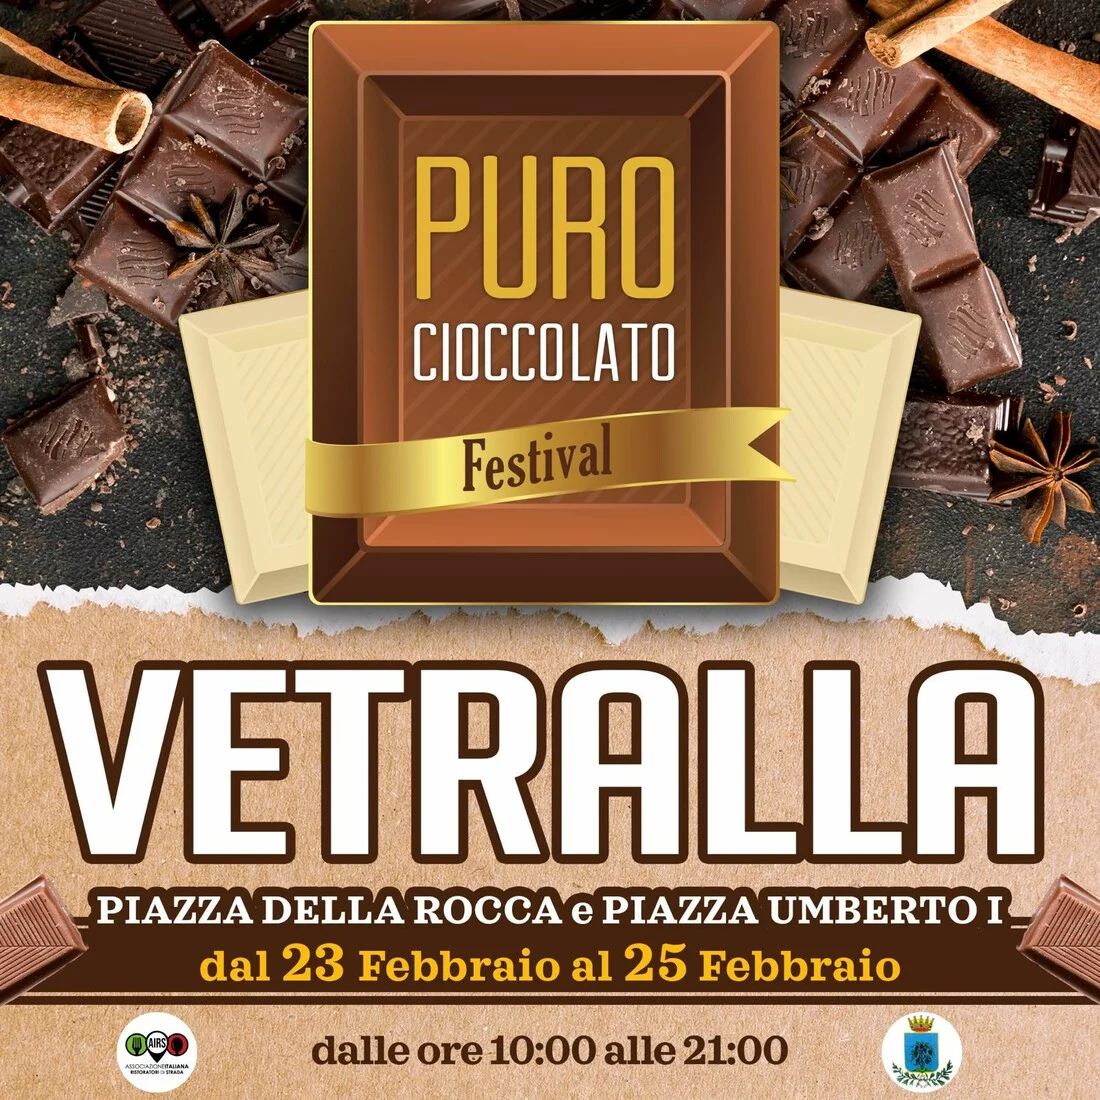 Puro cioccolato festival - Vetralla